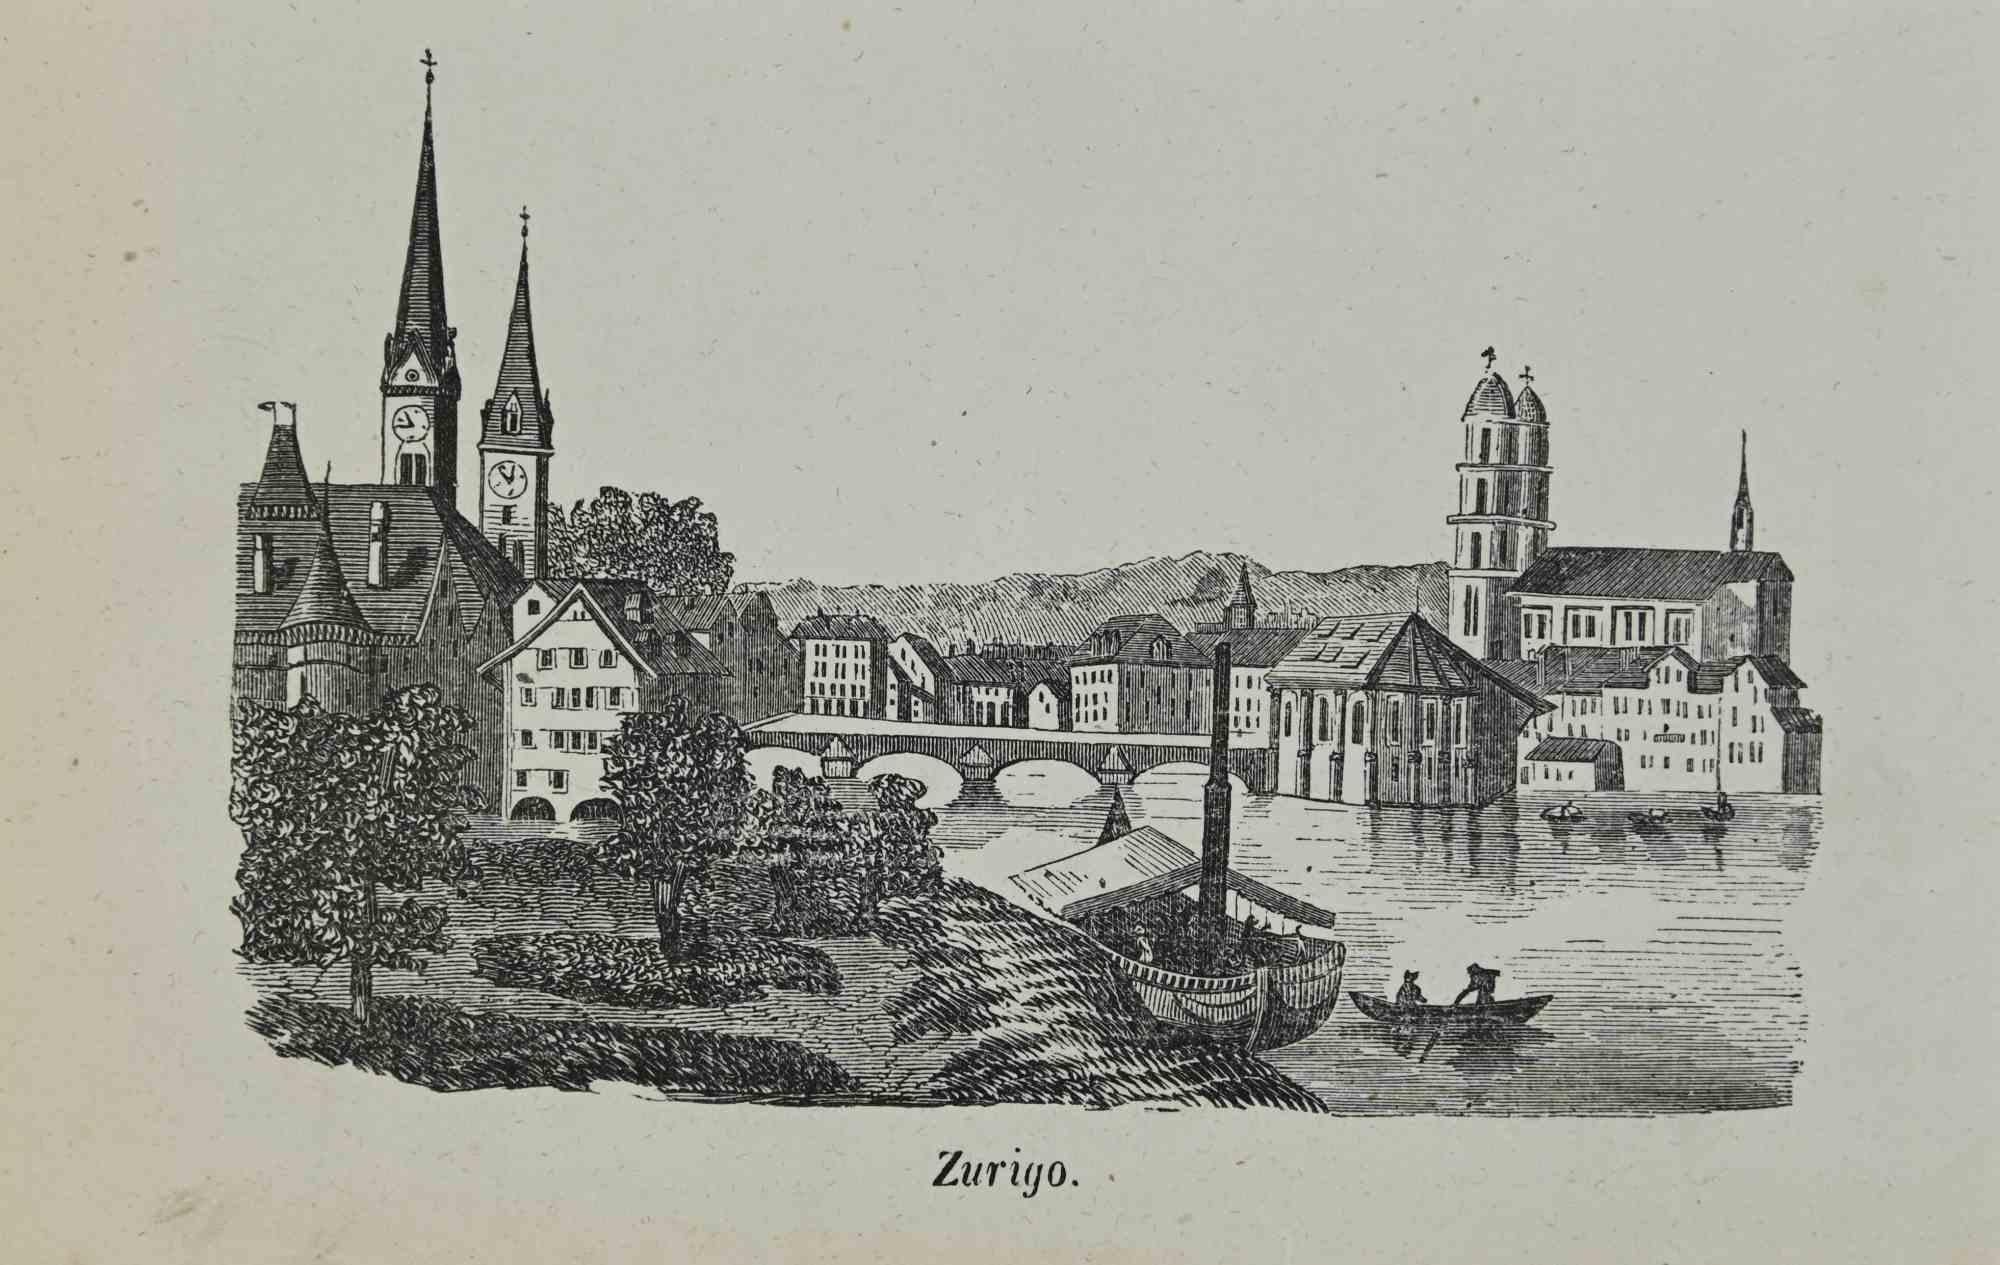 Zurich - Lithograph - 1862